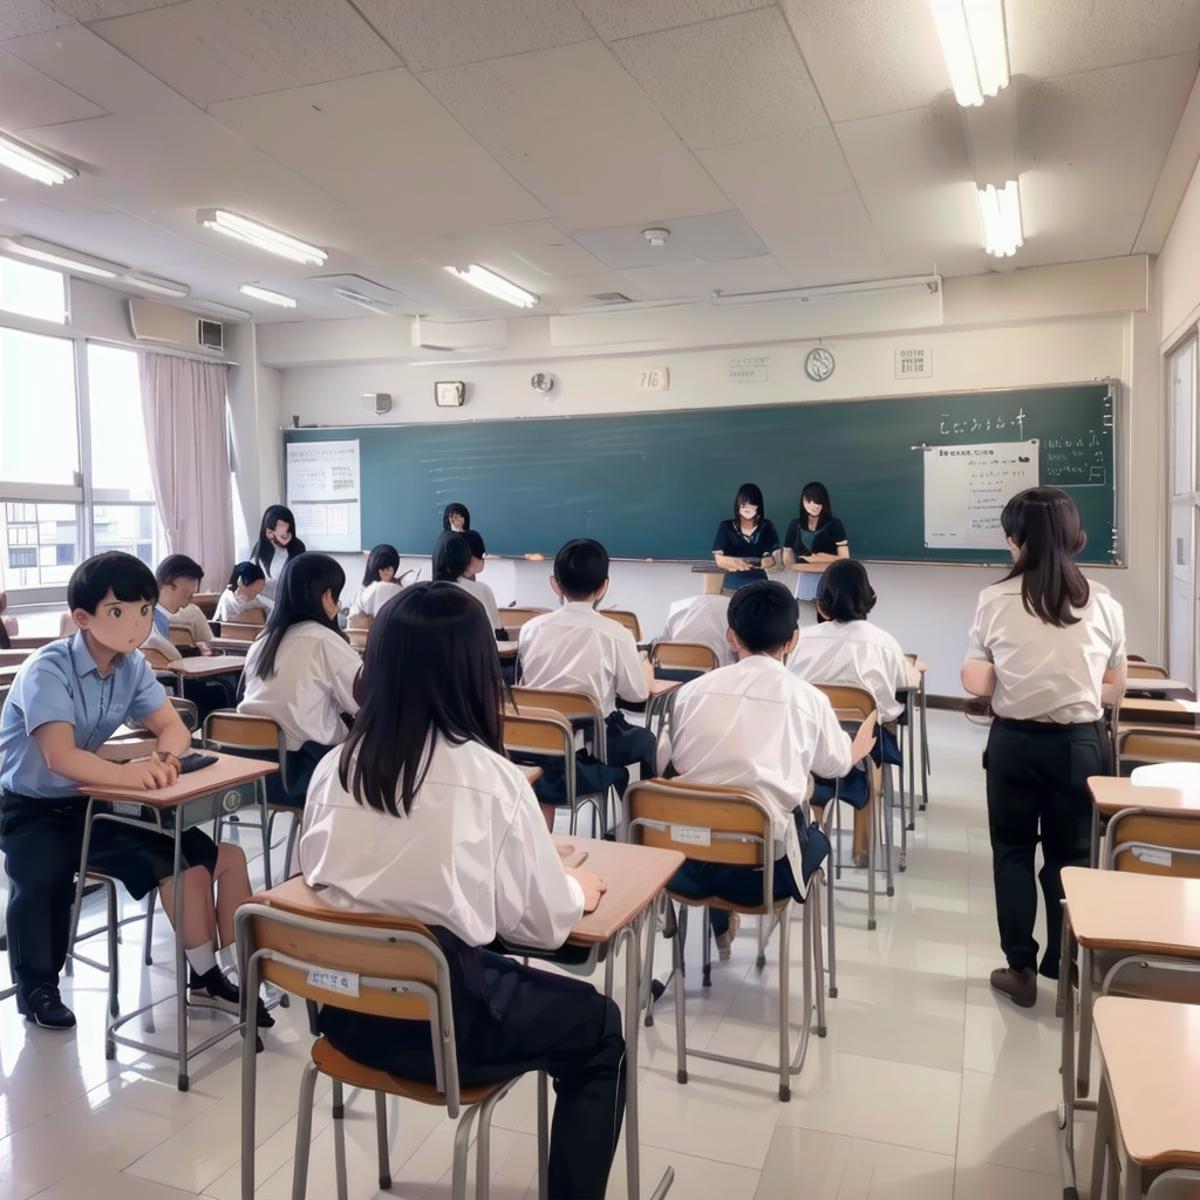 学校の教室 / Japanese School Classroom SD15 image by swingwings